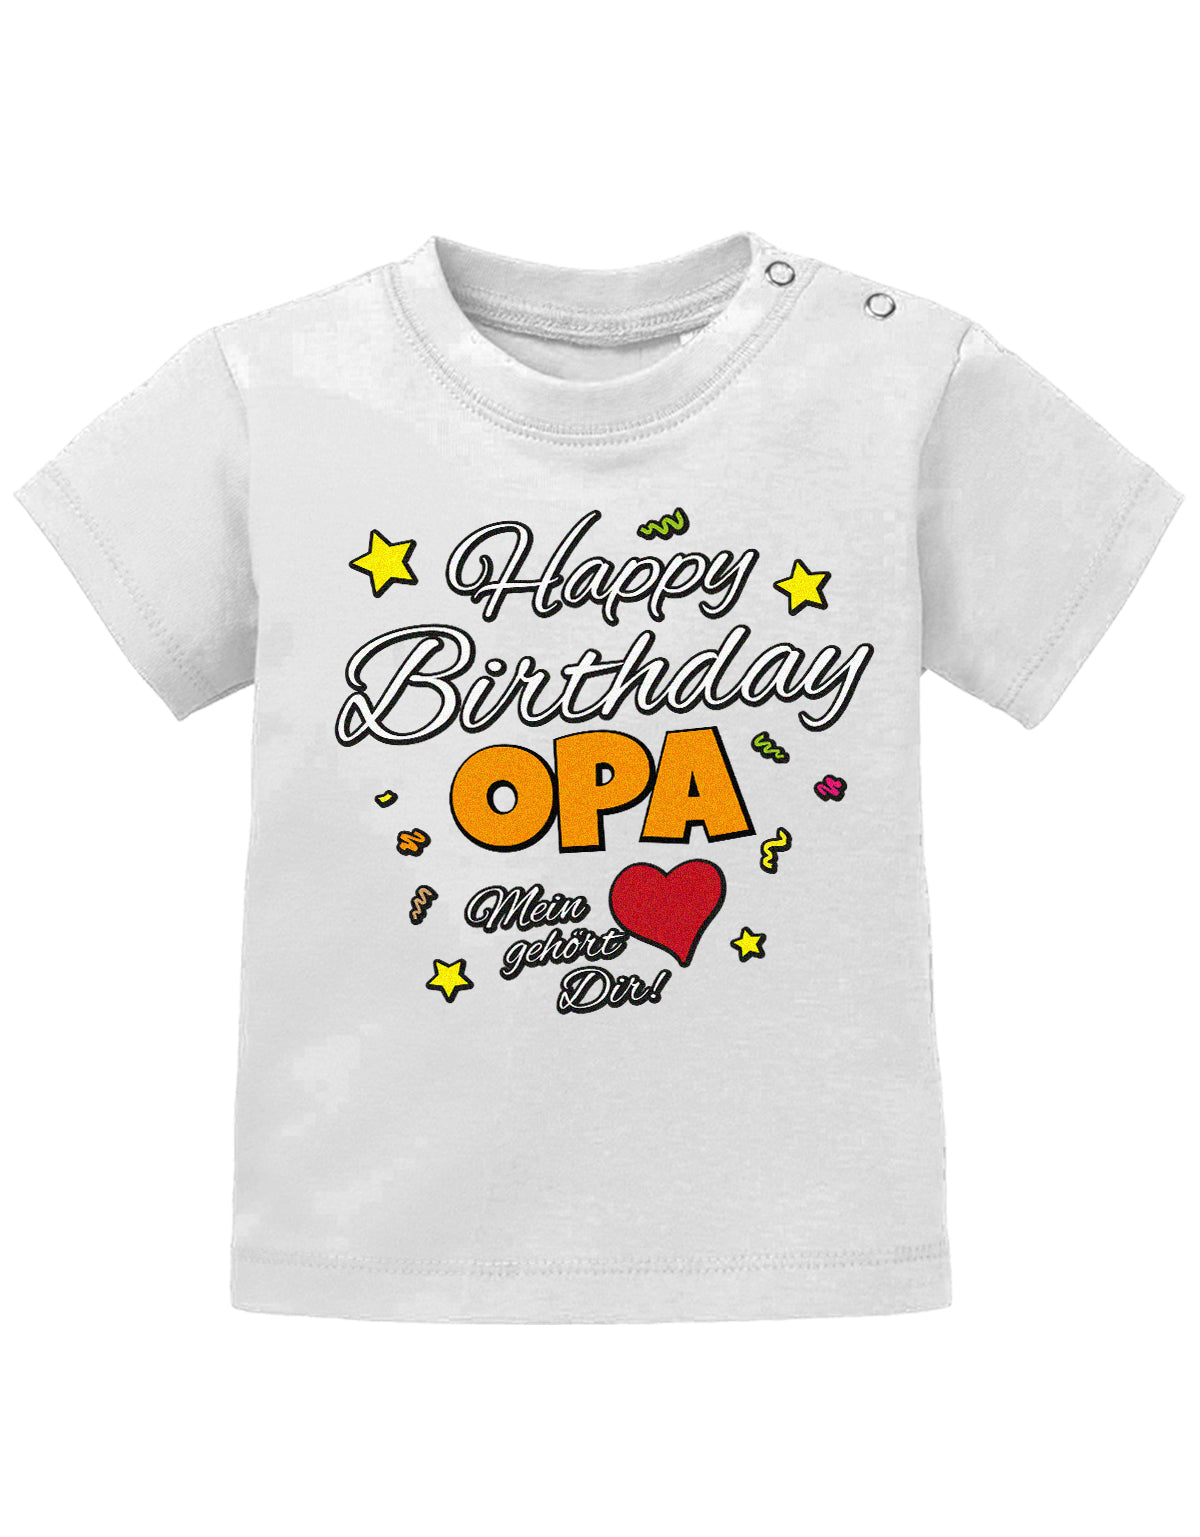 Opa Spruch Baby Shirt. Happy Birthday, Opa, mein Herz gehört Dir. Weiss